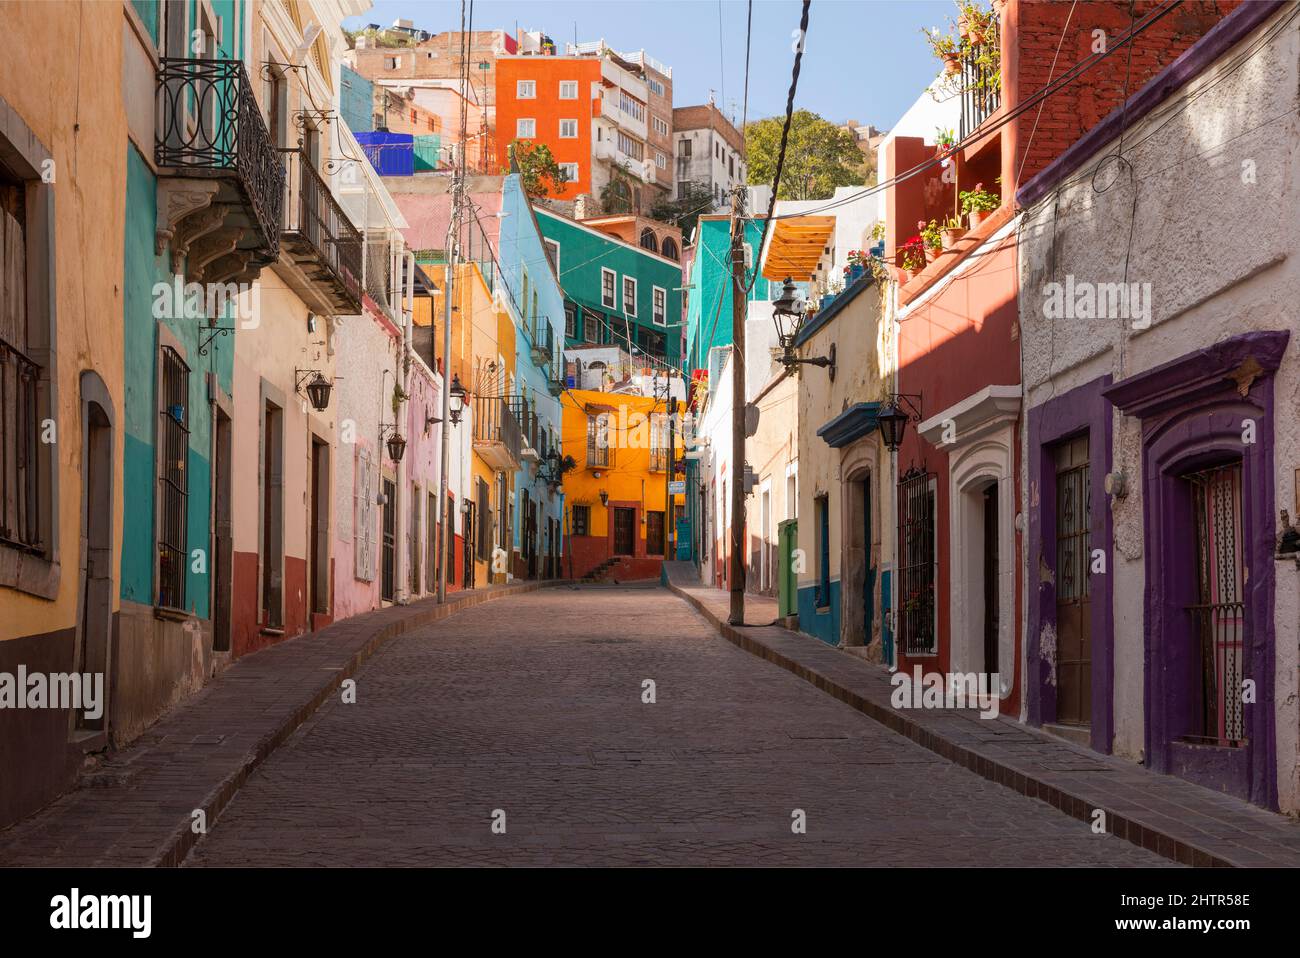 México, Estado de Guanajuato, Guanajuato, un colorido paisaje urbano de la ciudad colonial española Foto de stock